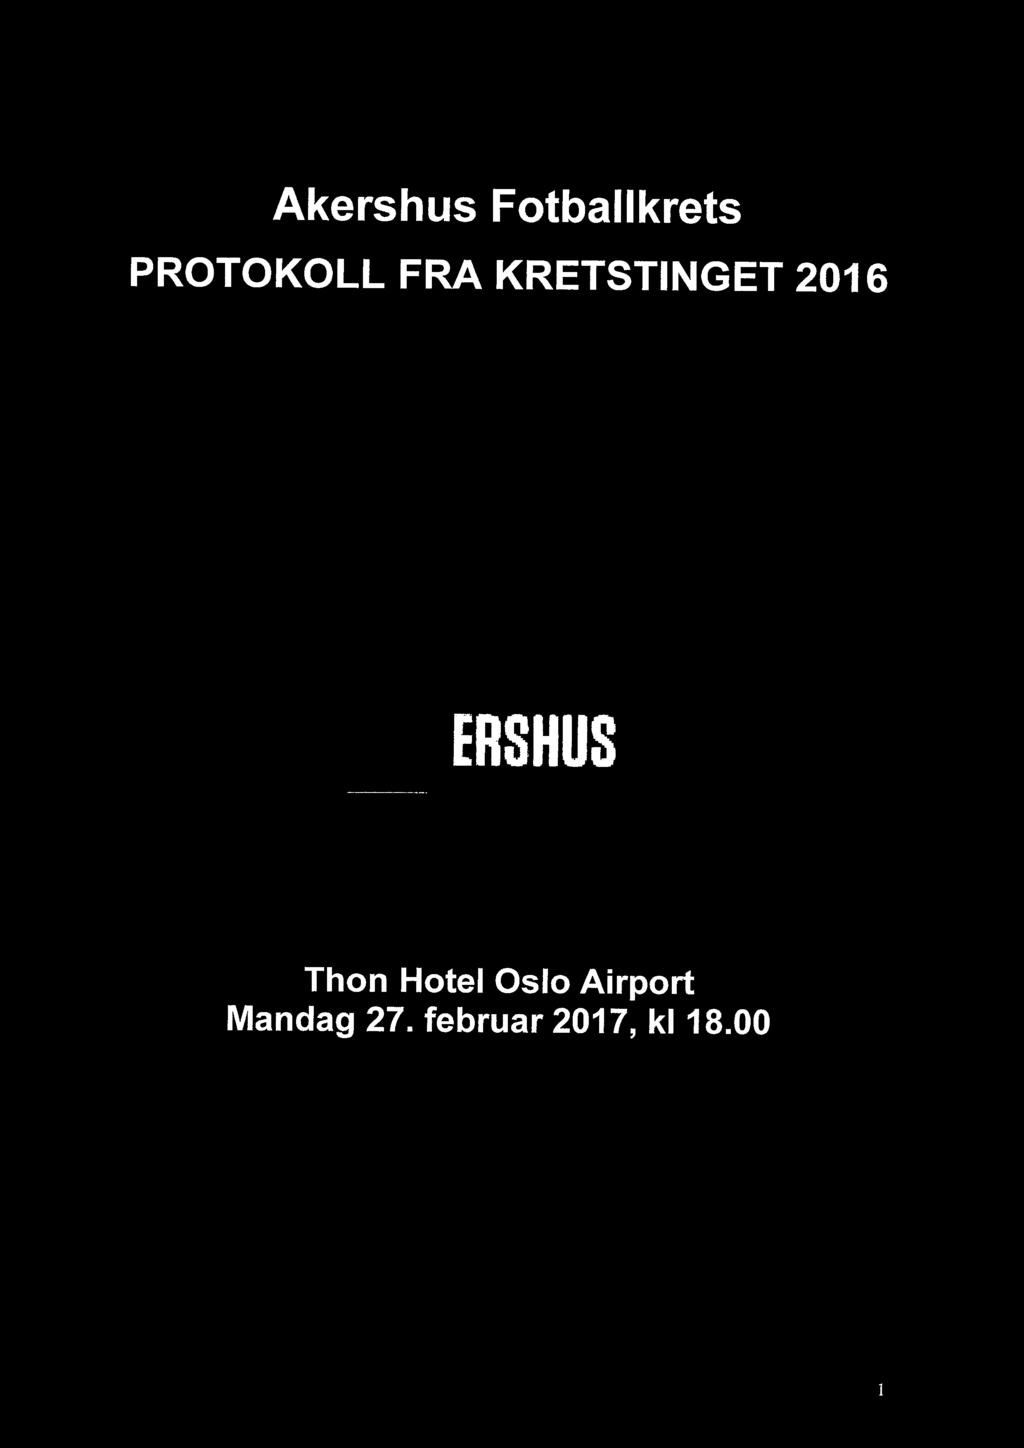 2016 AKERSHUS Thon Hotel Oslo